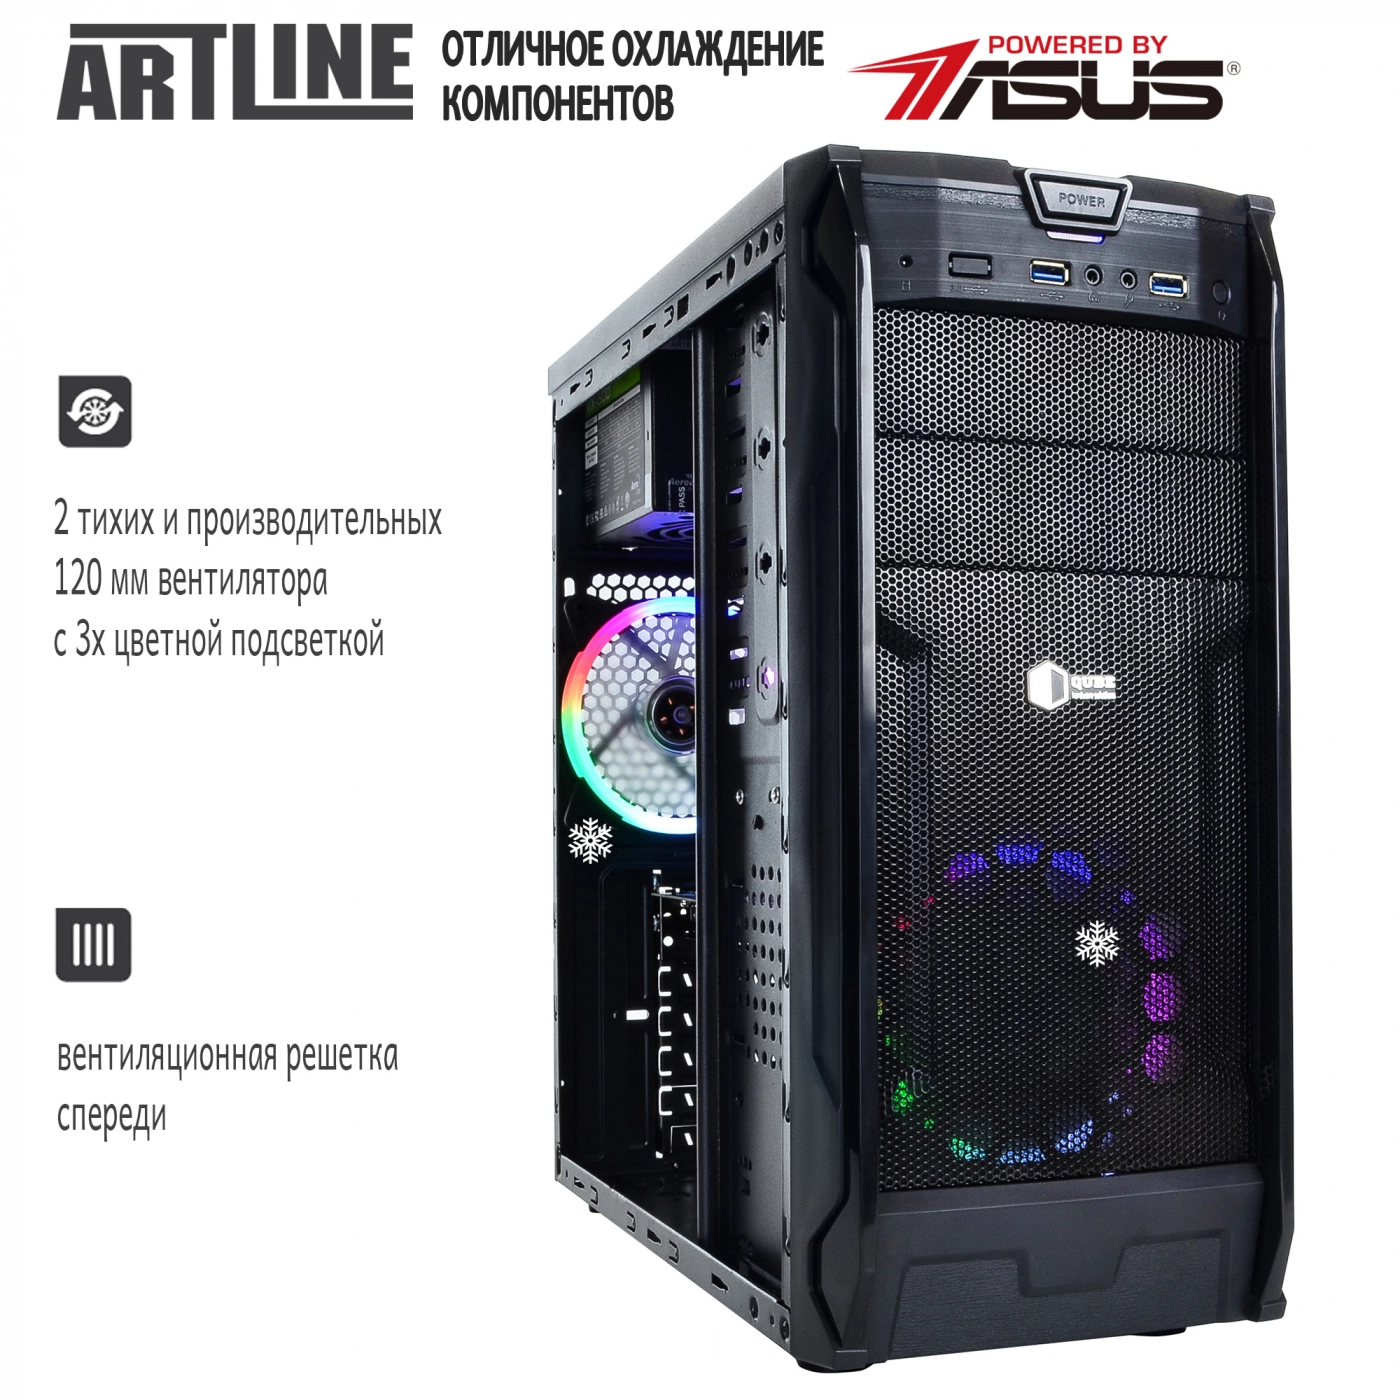 Купить Компьютер ARTLINE Gaming X31v13 - фото 2